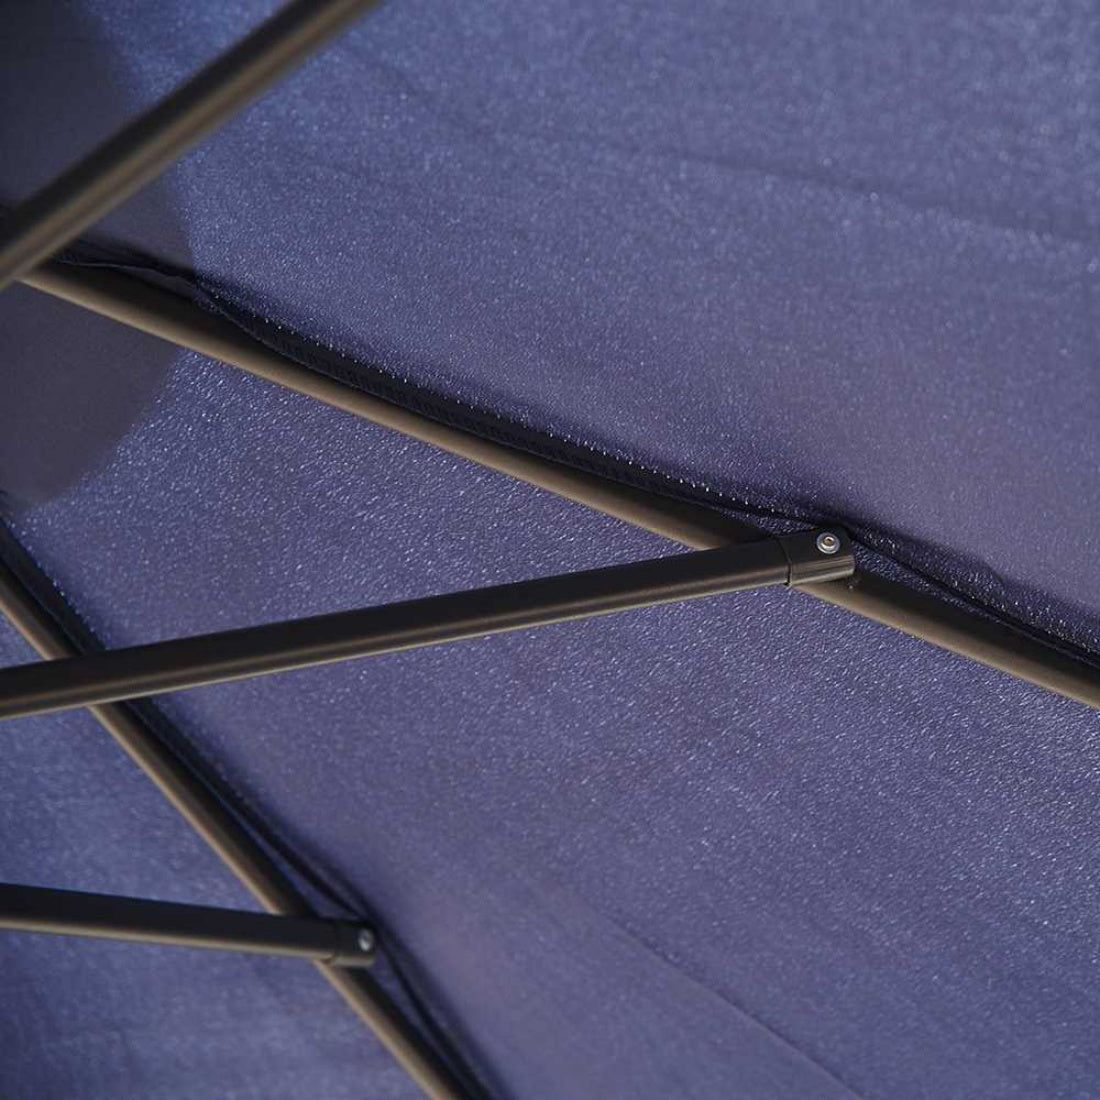 3m Perfect Oasis Black Garden Umbrella Cantilever Outdoor Shade